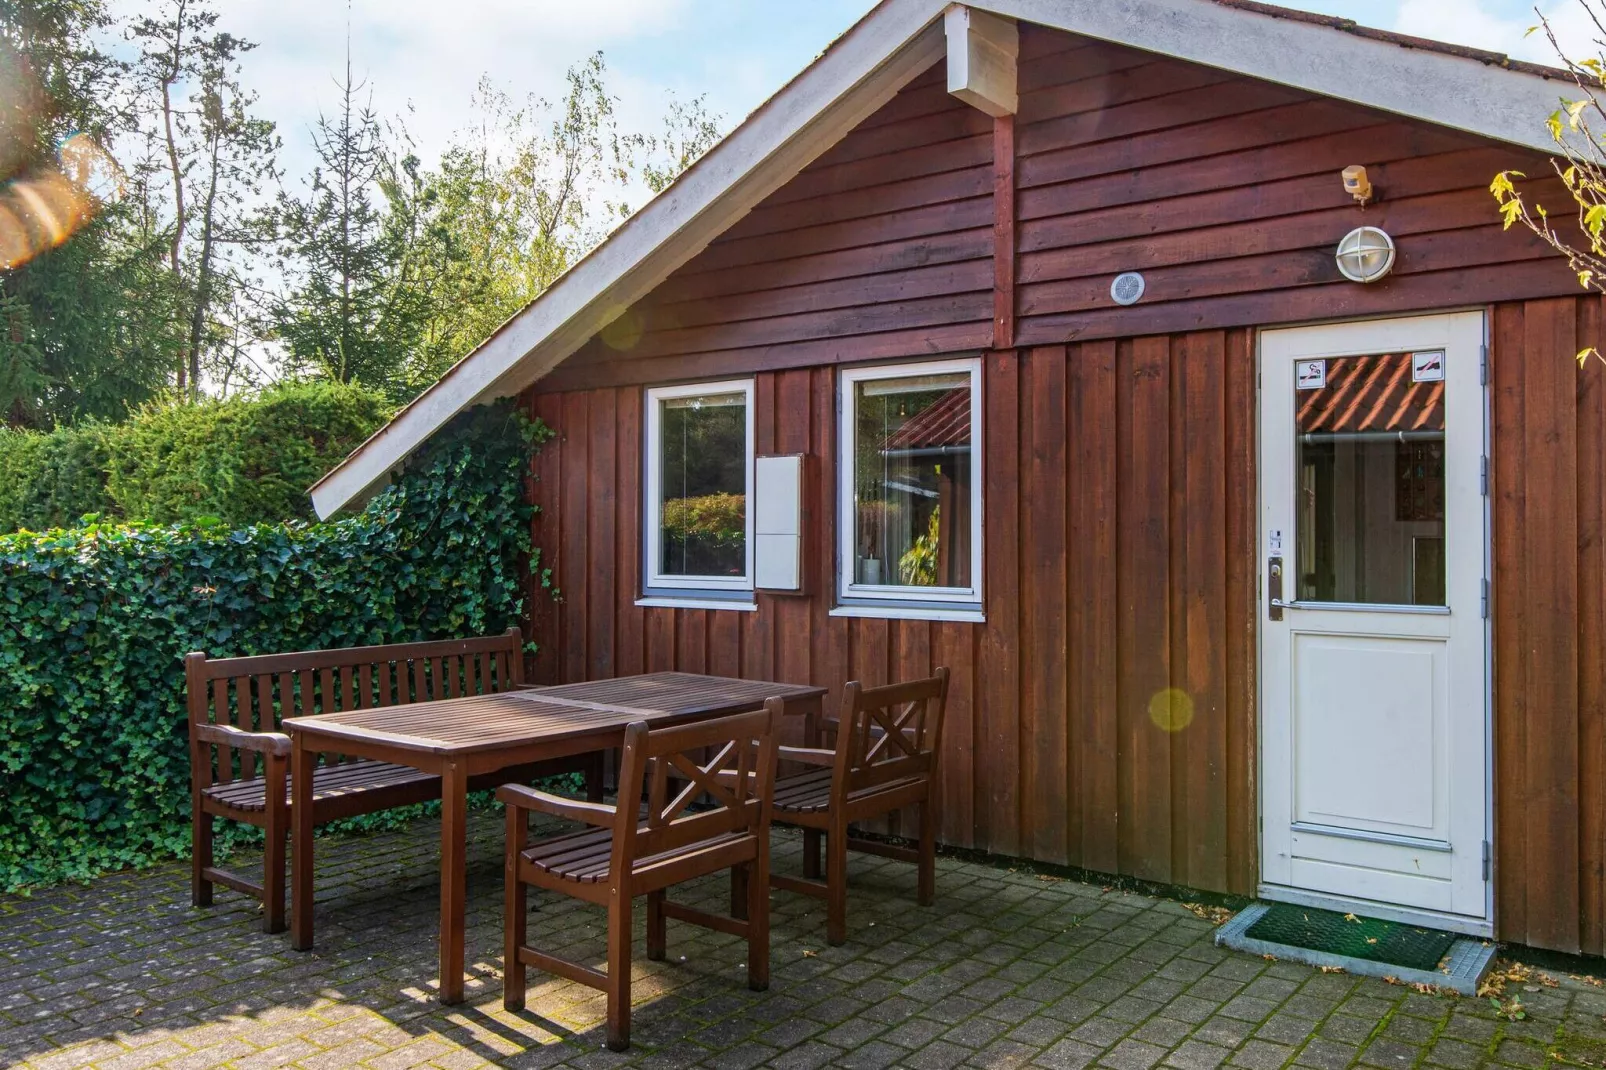 Knus vakantiehuis in Ebeltoft met open keuken-Uitzicht